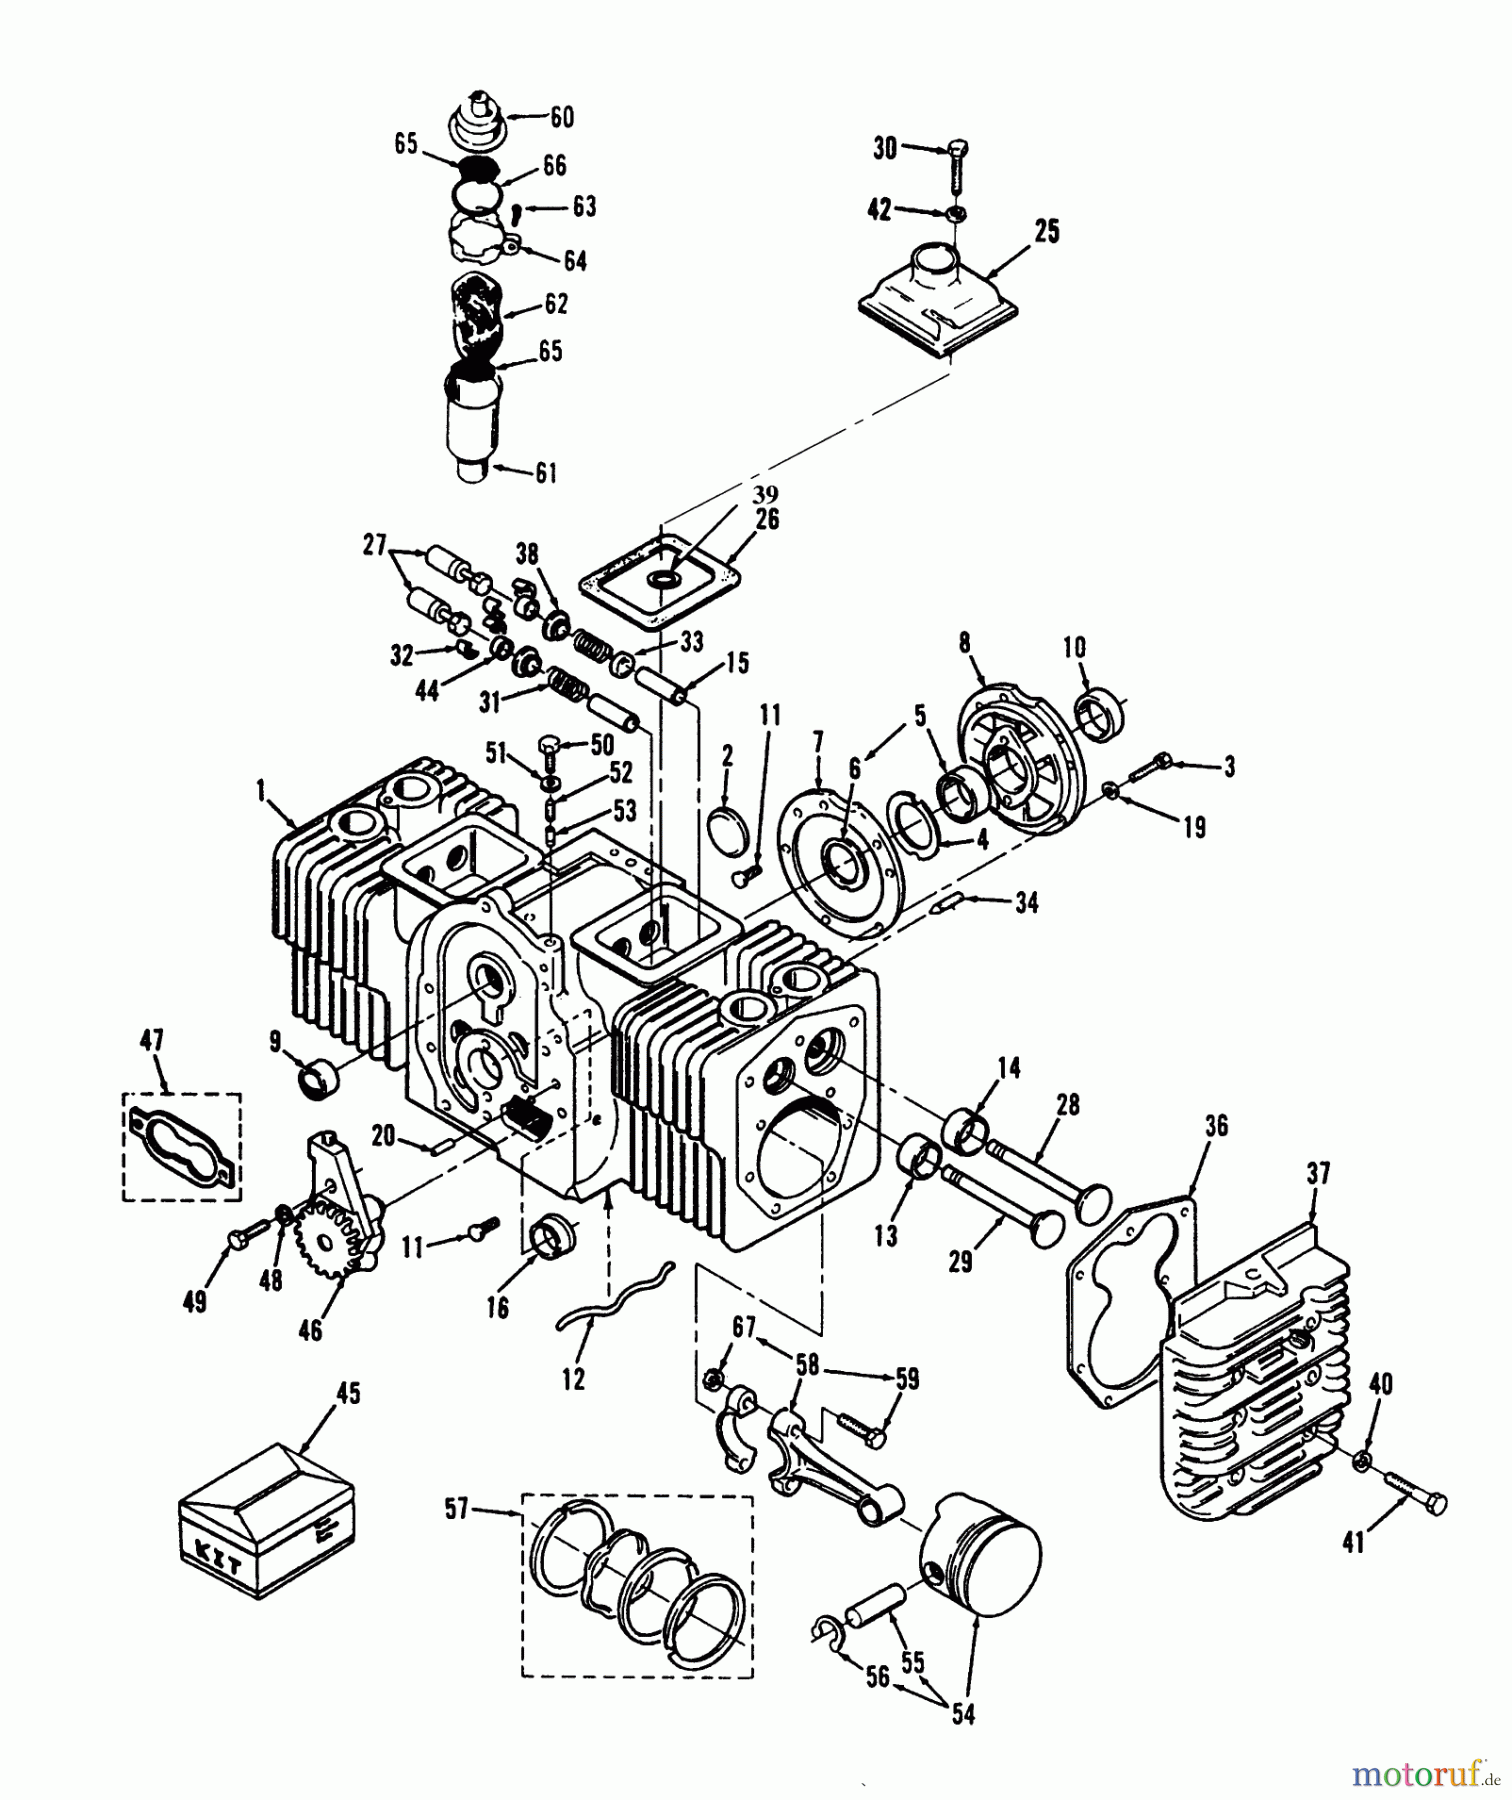  Toro Neu Mowers, Lawn & Garden Tractor Seite 1 73520 (520-H) - Toro 520-H Garden Tractor, 1993 (39000001-39999999) ENGINE CYLINDER BLOCK